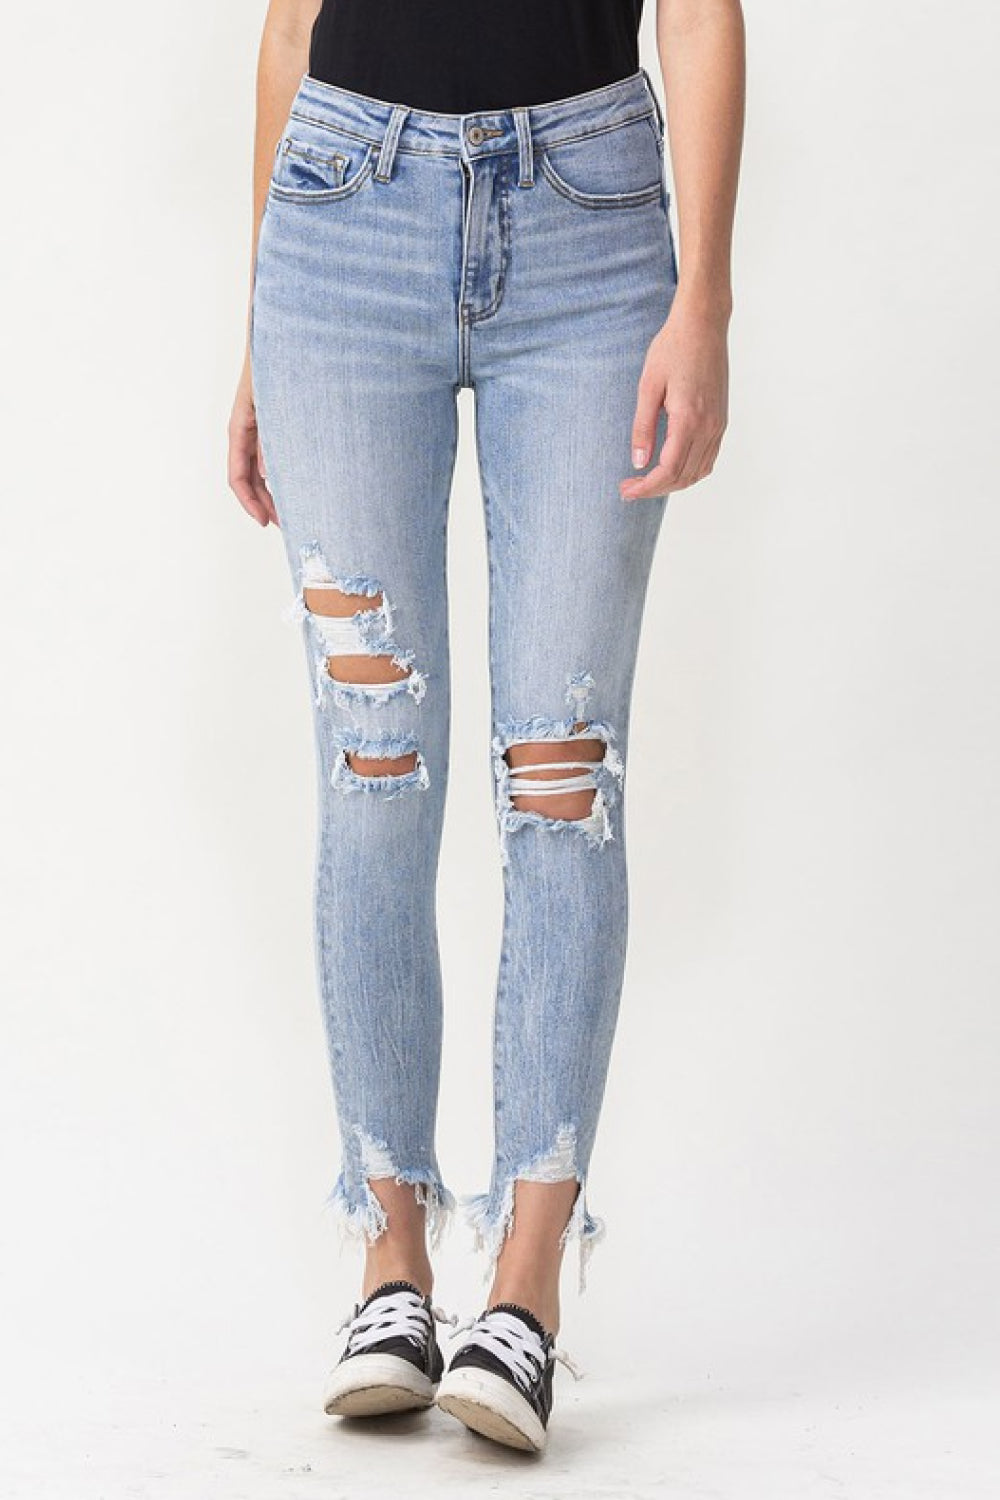 Lovervet Full Size Lauren Distressed High Rise Skinny Jeans - DromedarShop.com Online Boutique